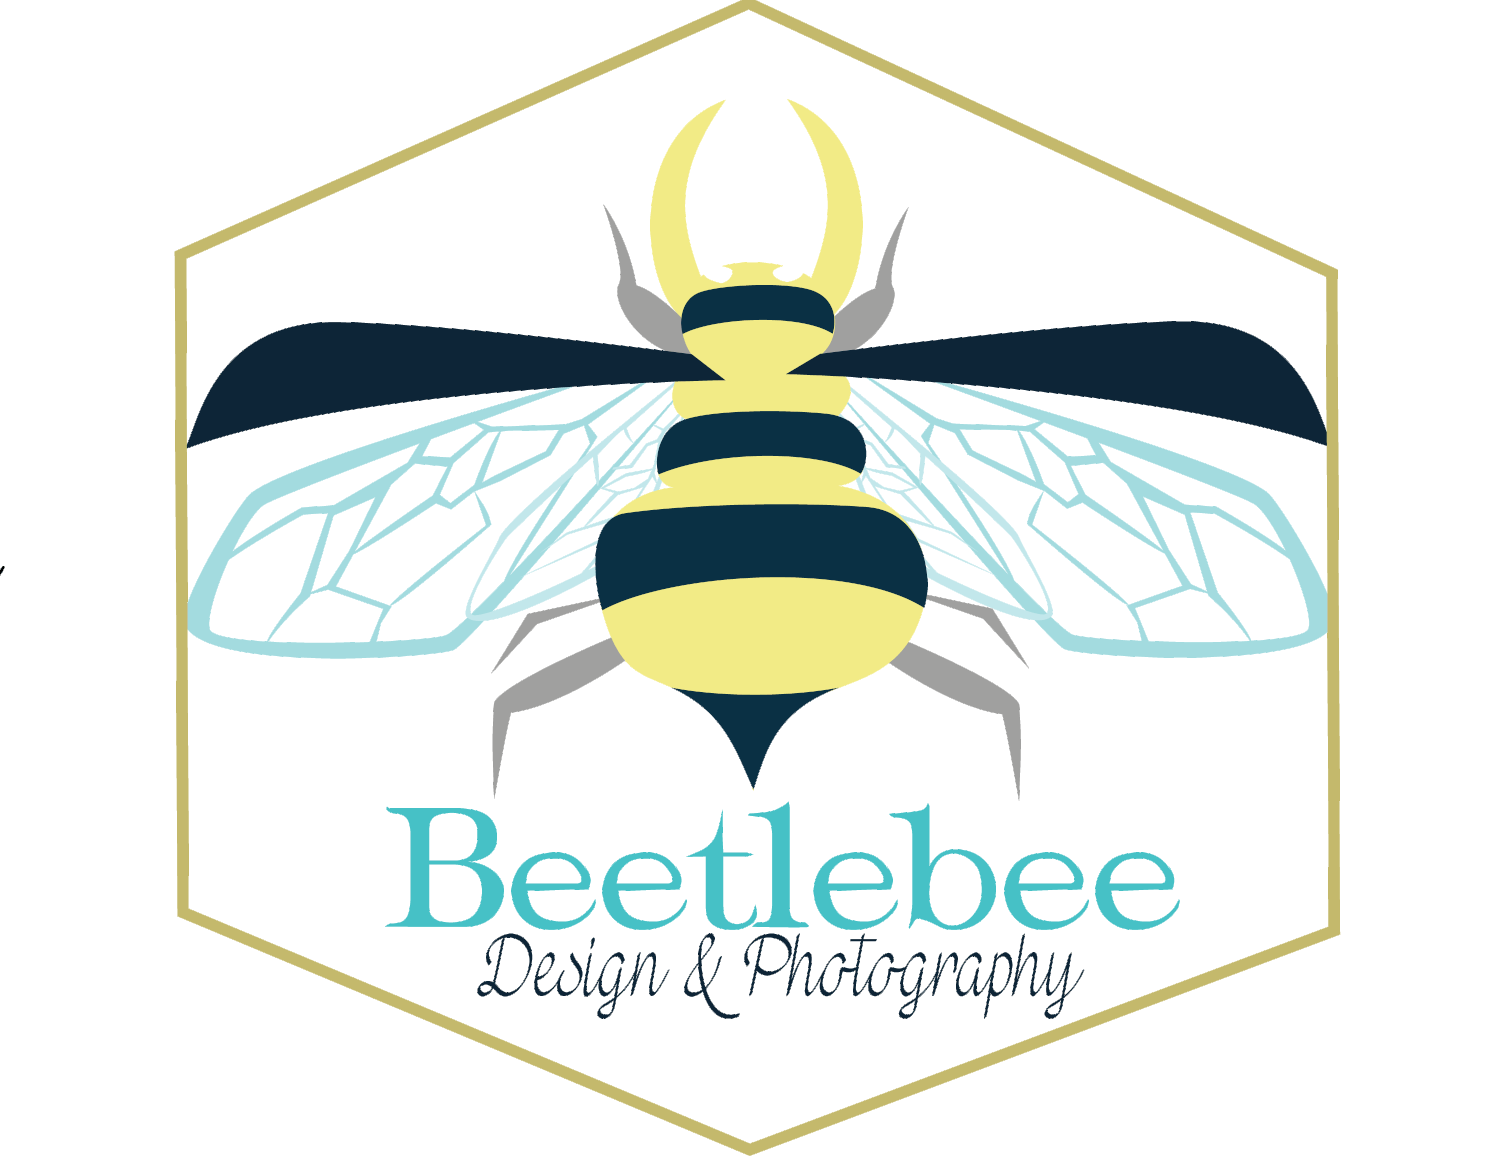 Beetlebee